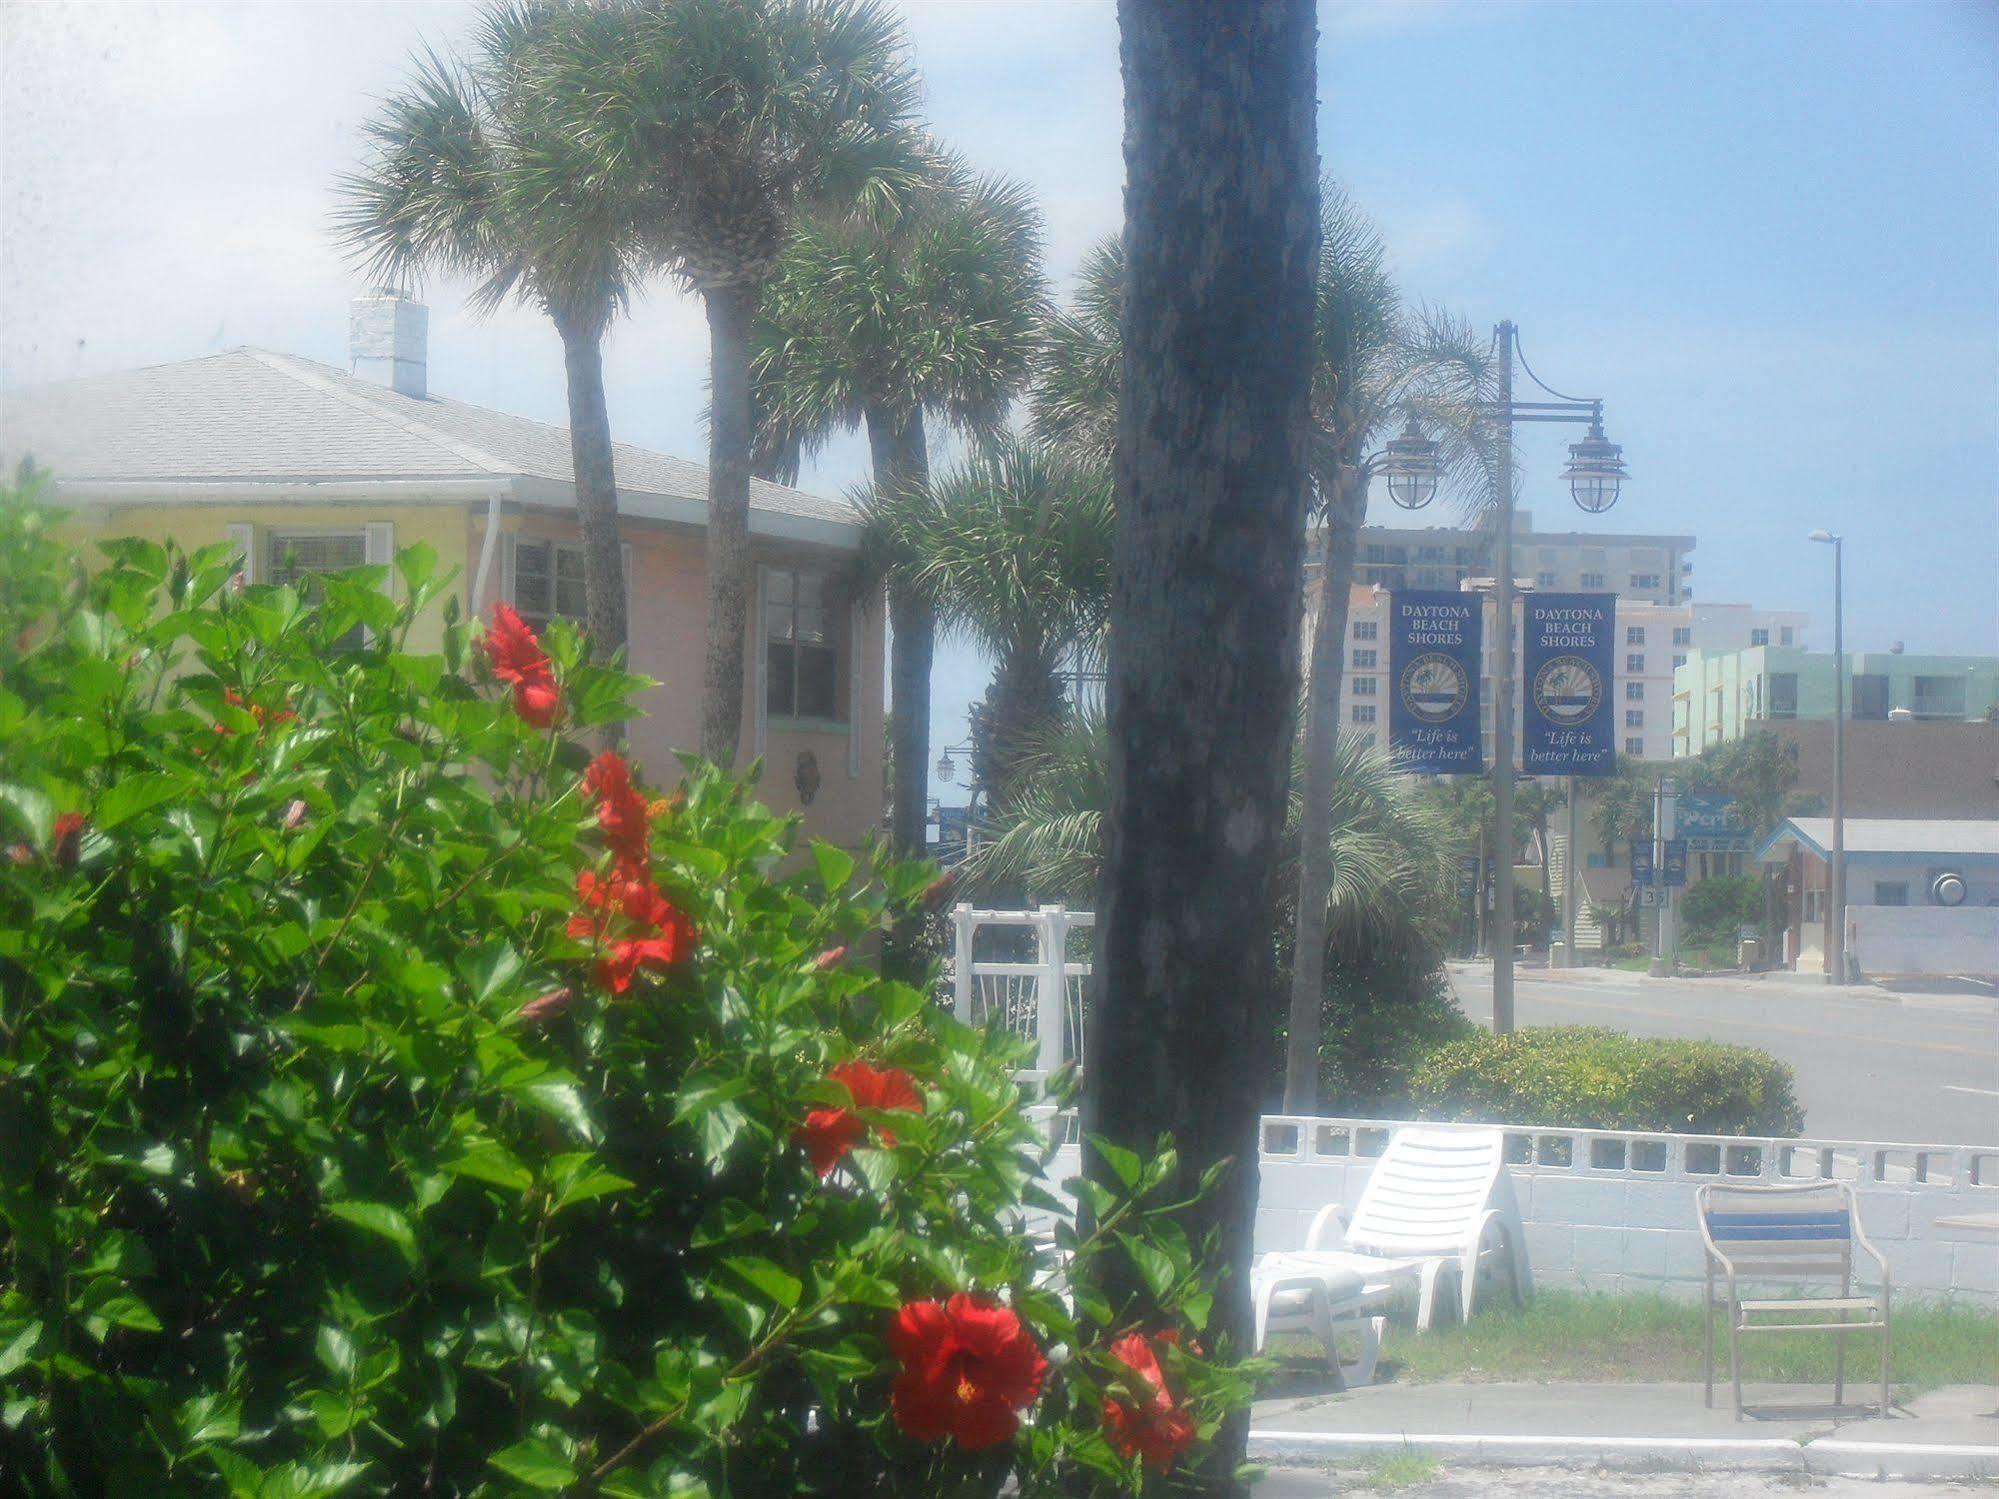 Shore Winds Motel Daytona Beach Exterior photo